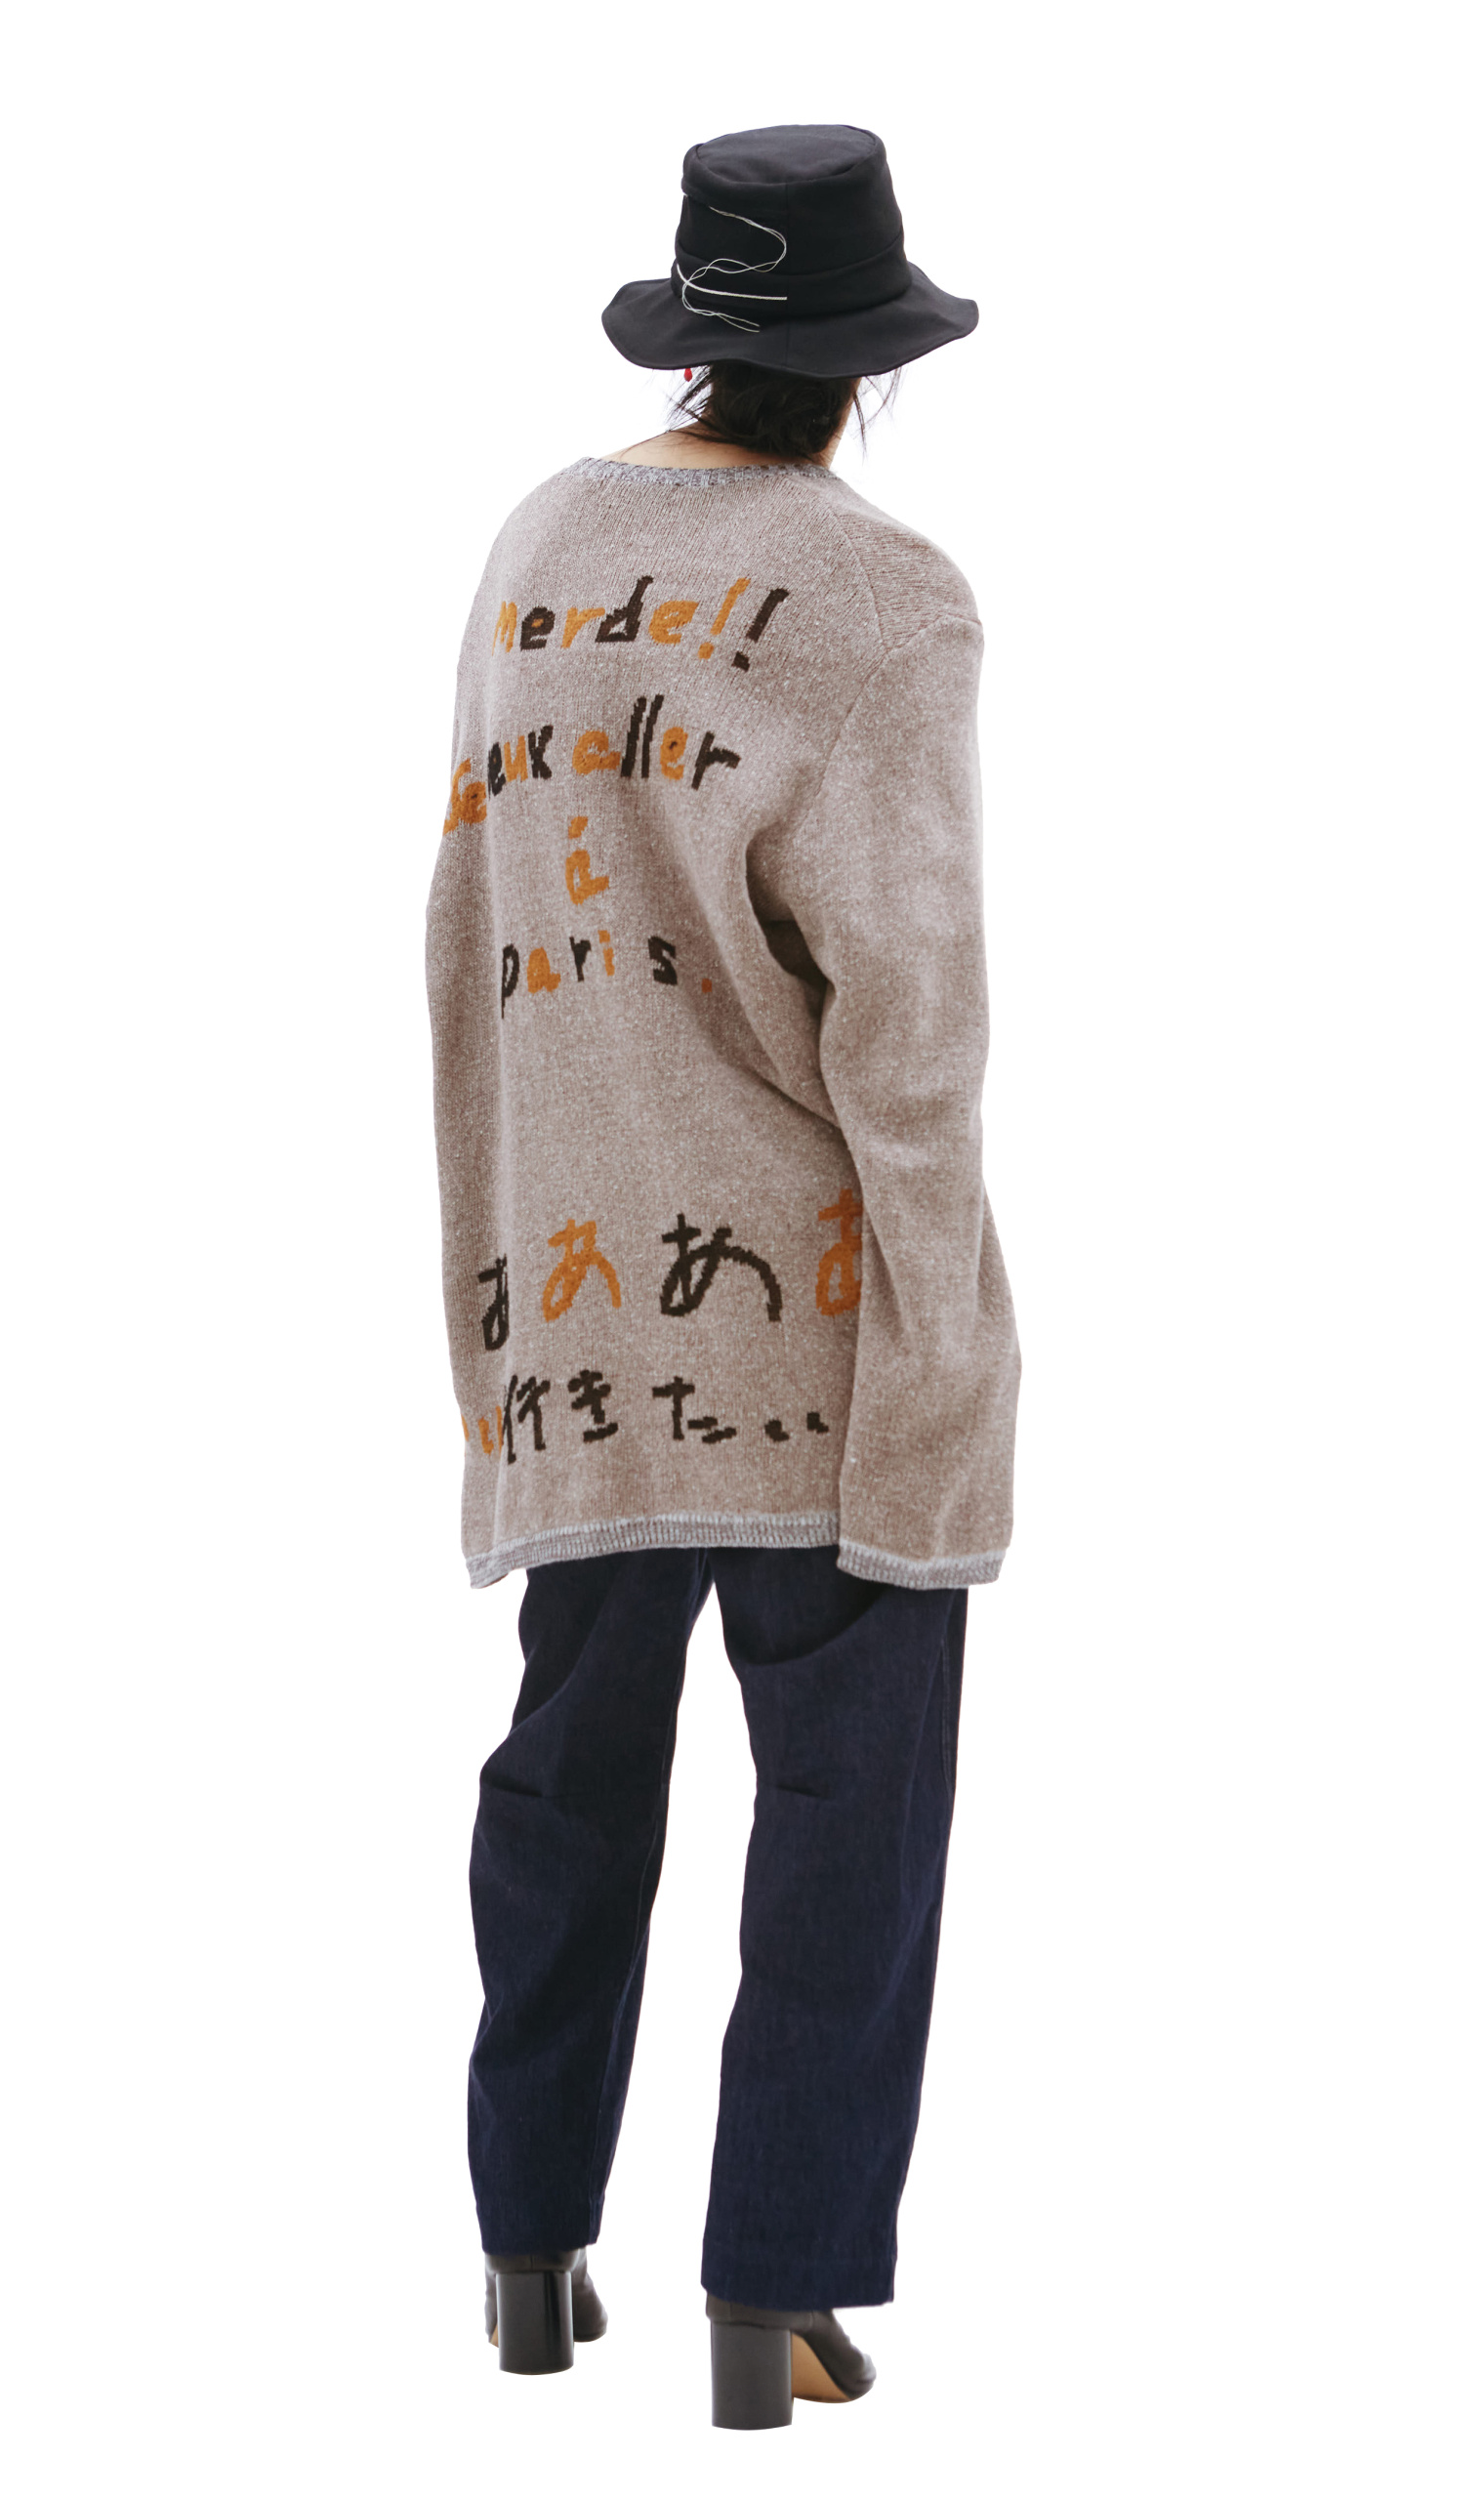 Yohji Yamamoto Asap print knit sweater